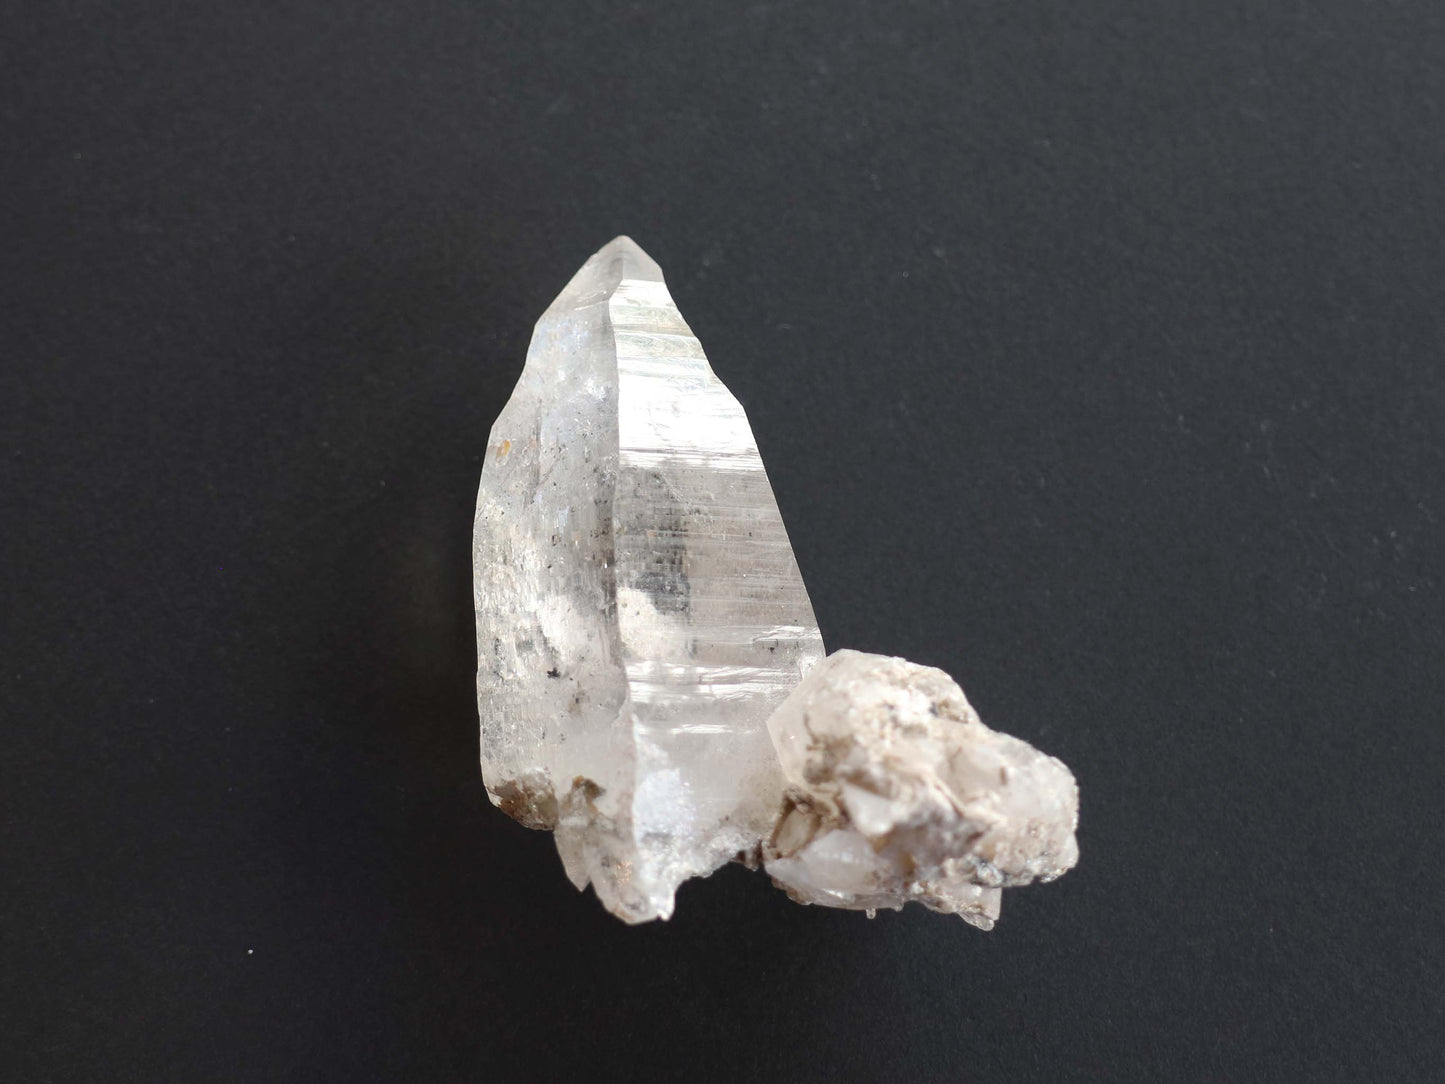 セルフフィールド ガネーシュヒマール産 ヒマラヤ 水晶PN:GG-141